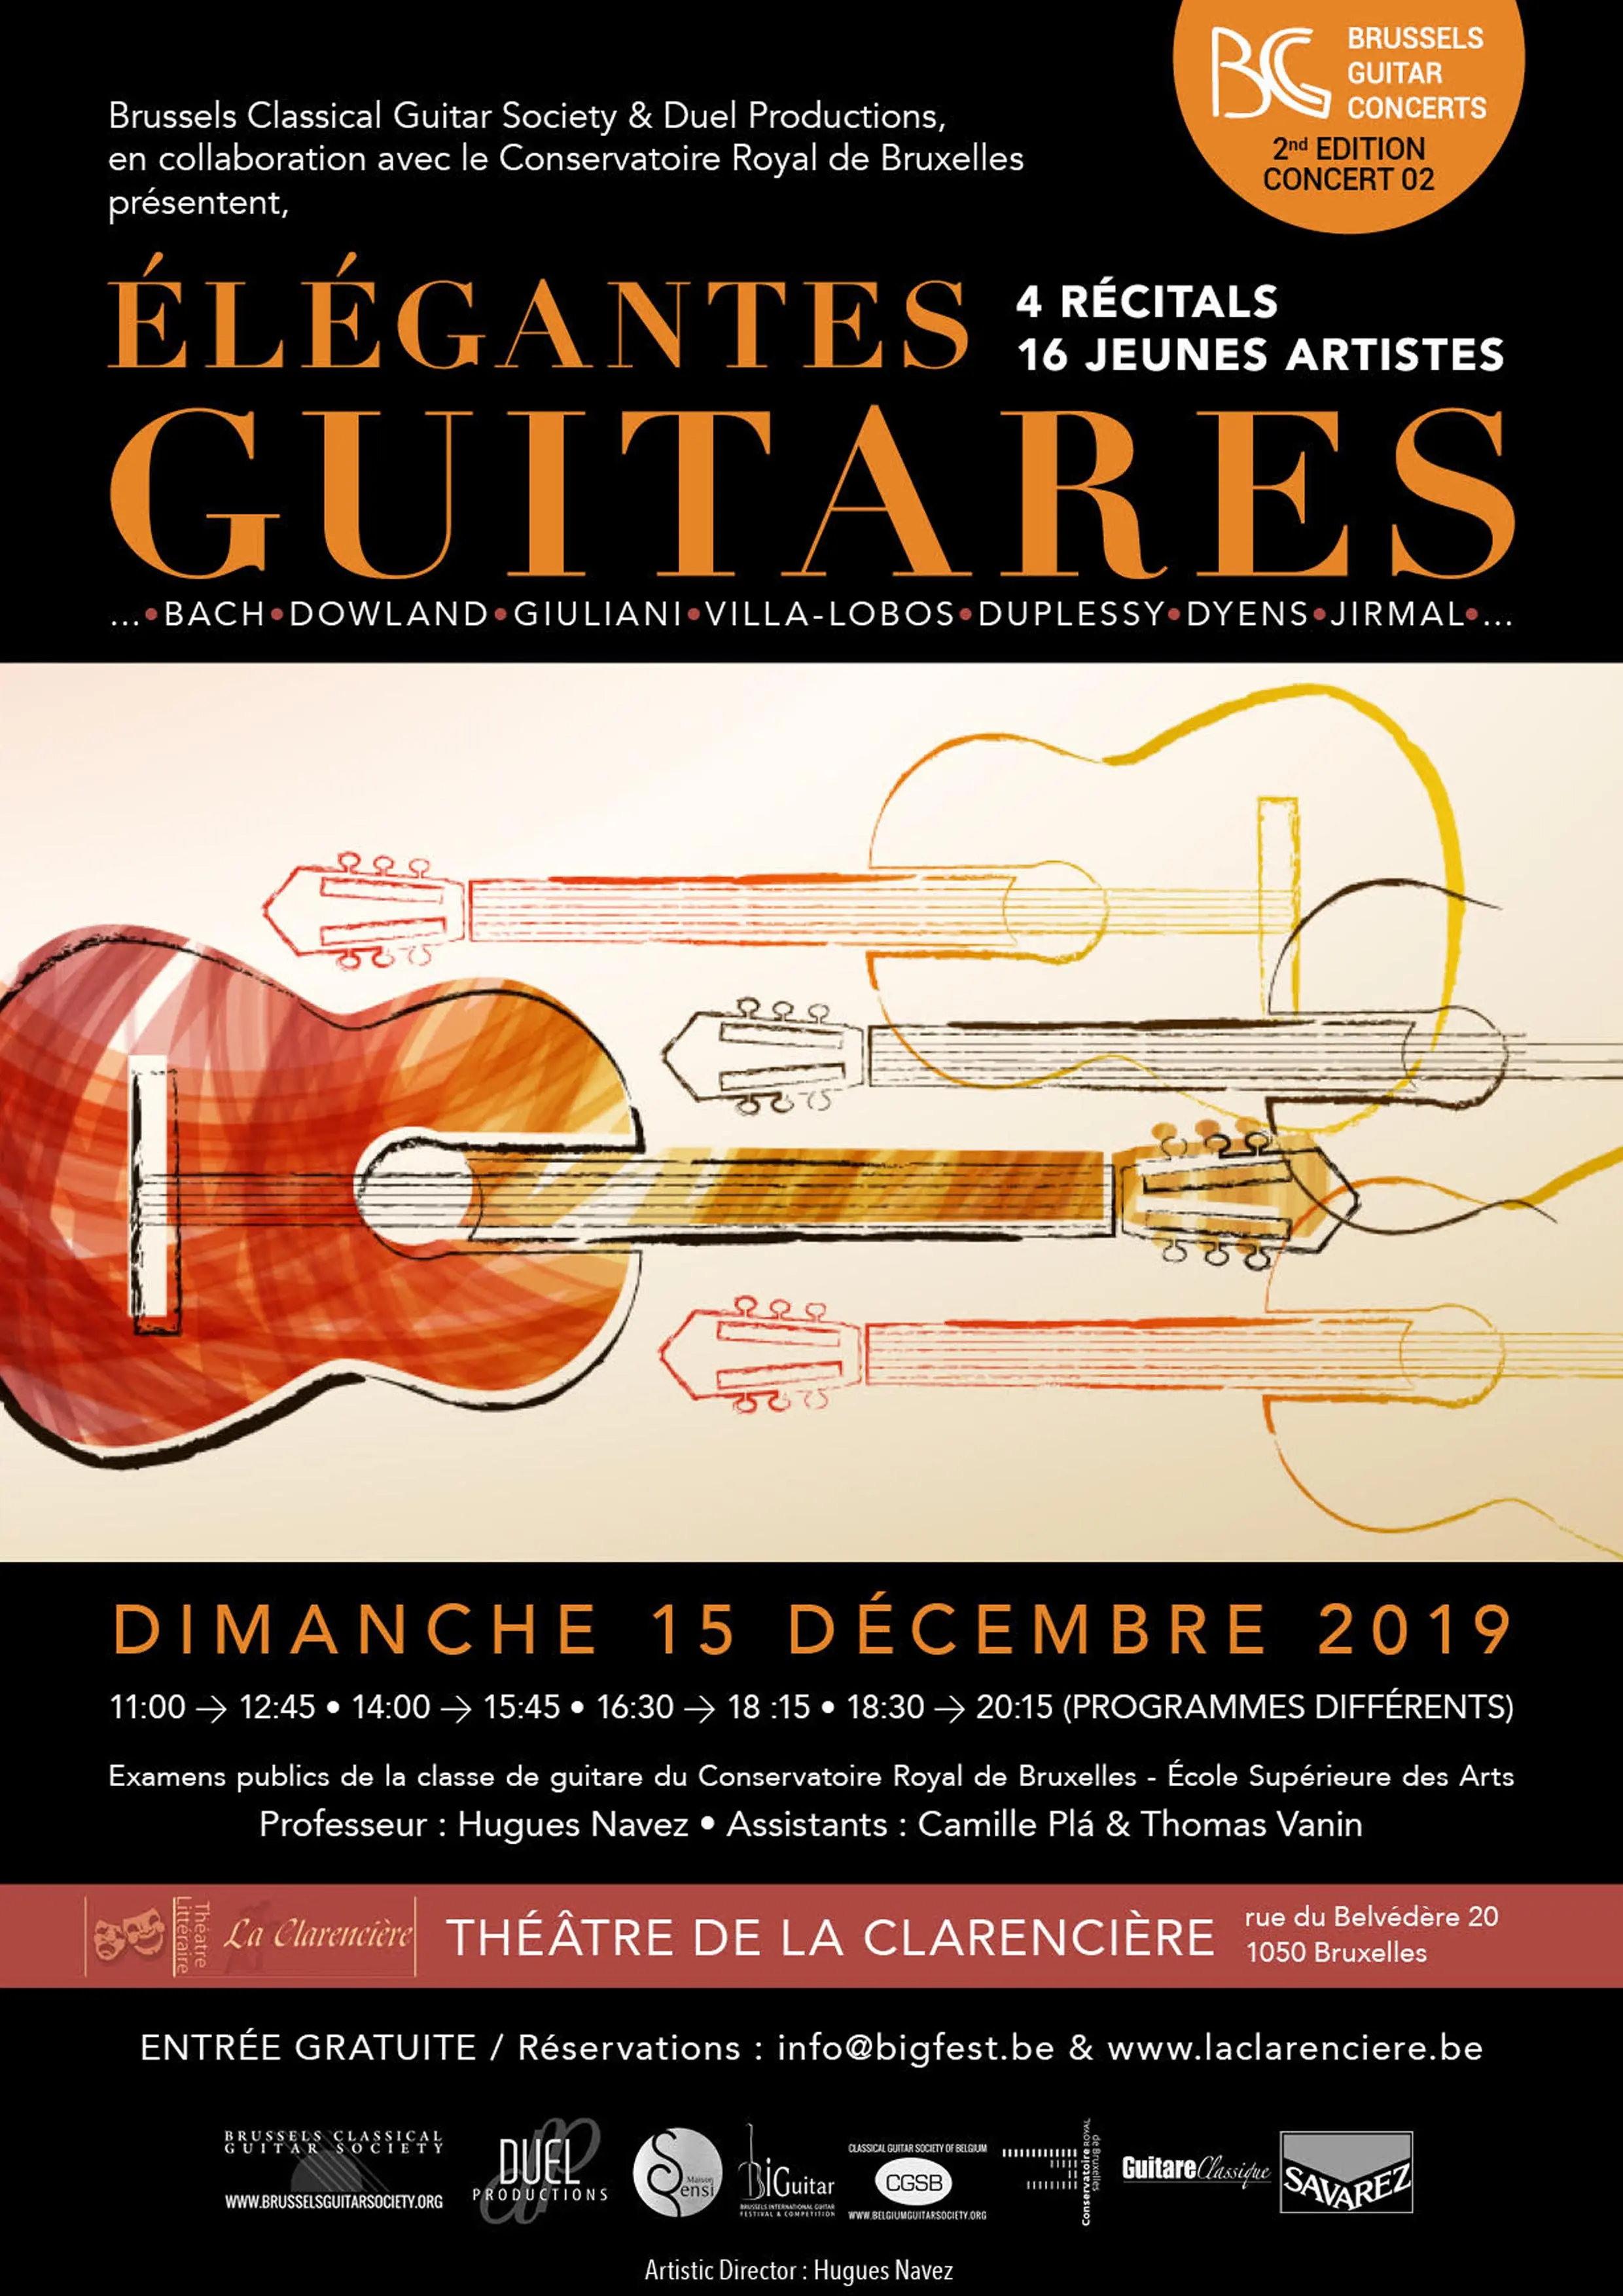 16 jonge artisten – 4 recitals - « Élégantes Guitares » - Brussels Guitar Concerts